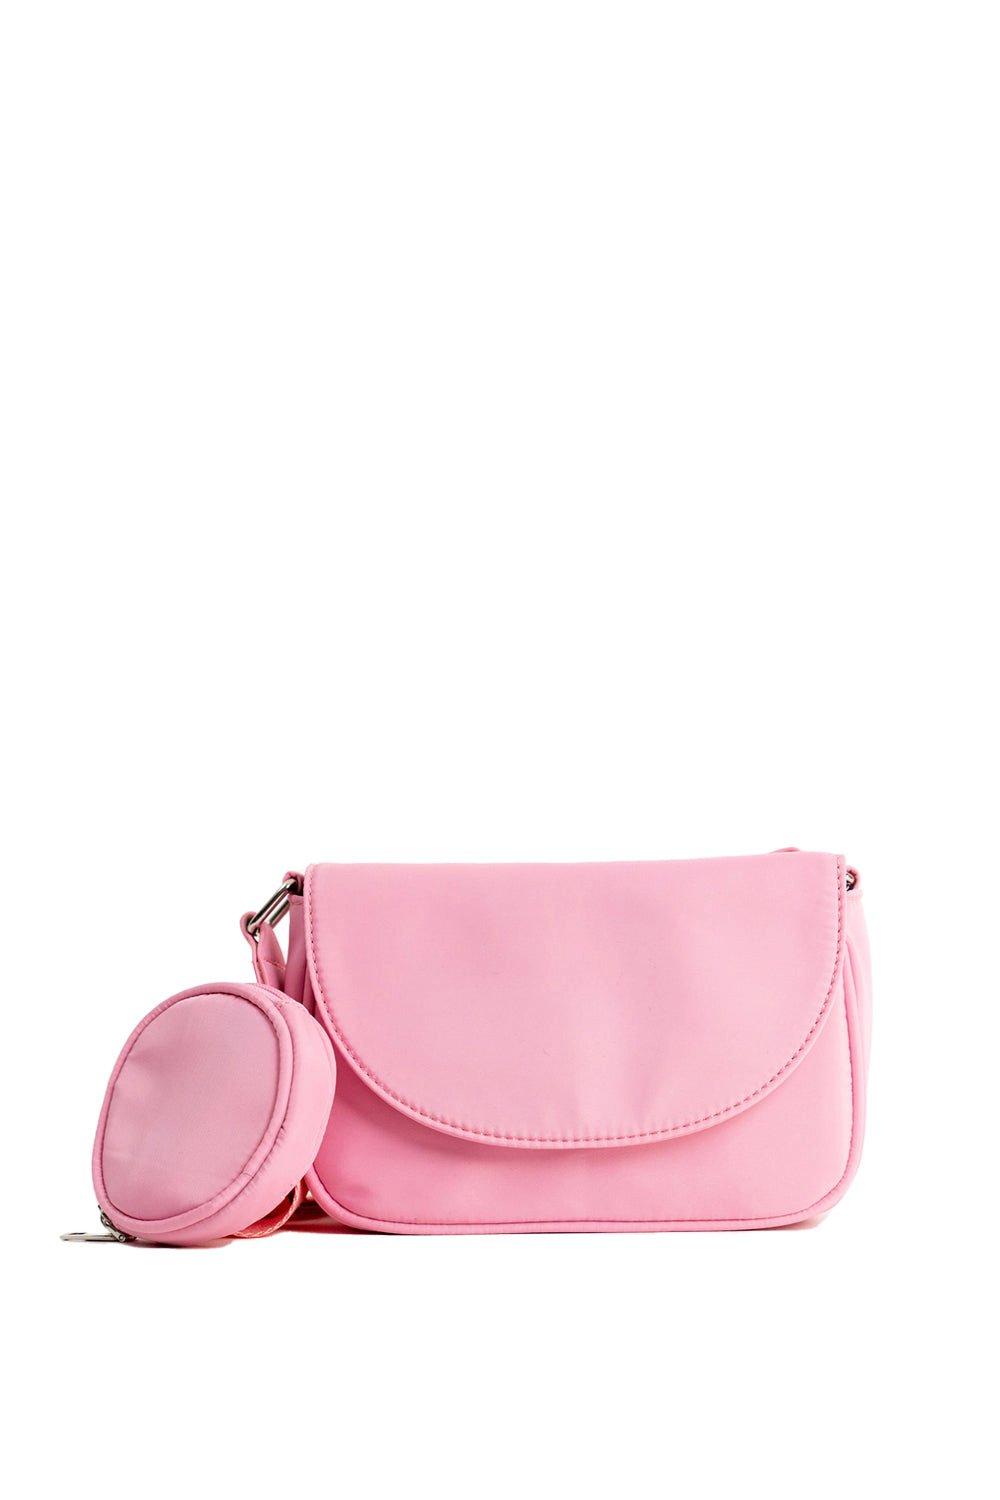 Нейлоновая сумка через плечо с портмоне для монет My Accessories London, розовый женская сумка через плечо со съемным ремешком